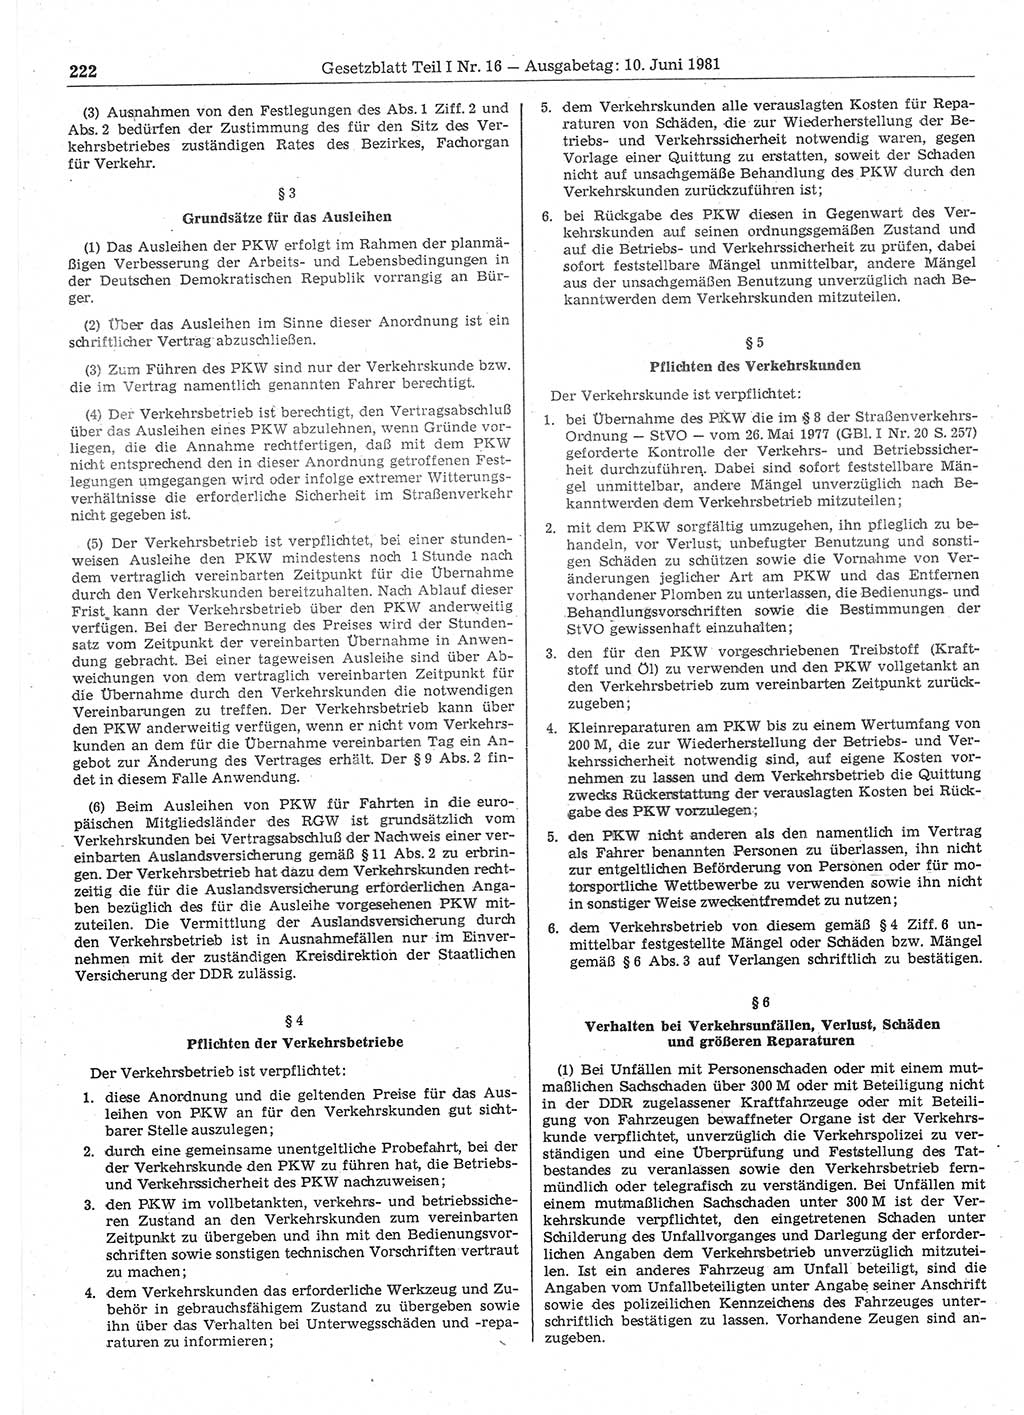 Gesetzblatt (GBl.) der Deutschen Demokratischen Republik (DDR) Teil Ⅰ 1981, Seite 222 (GBl. DDR Ⅰ 1981, S. 222)